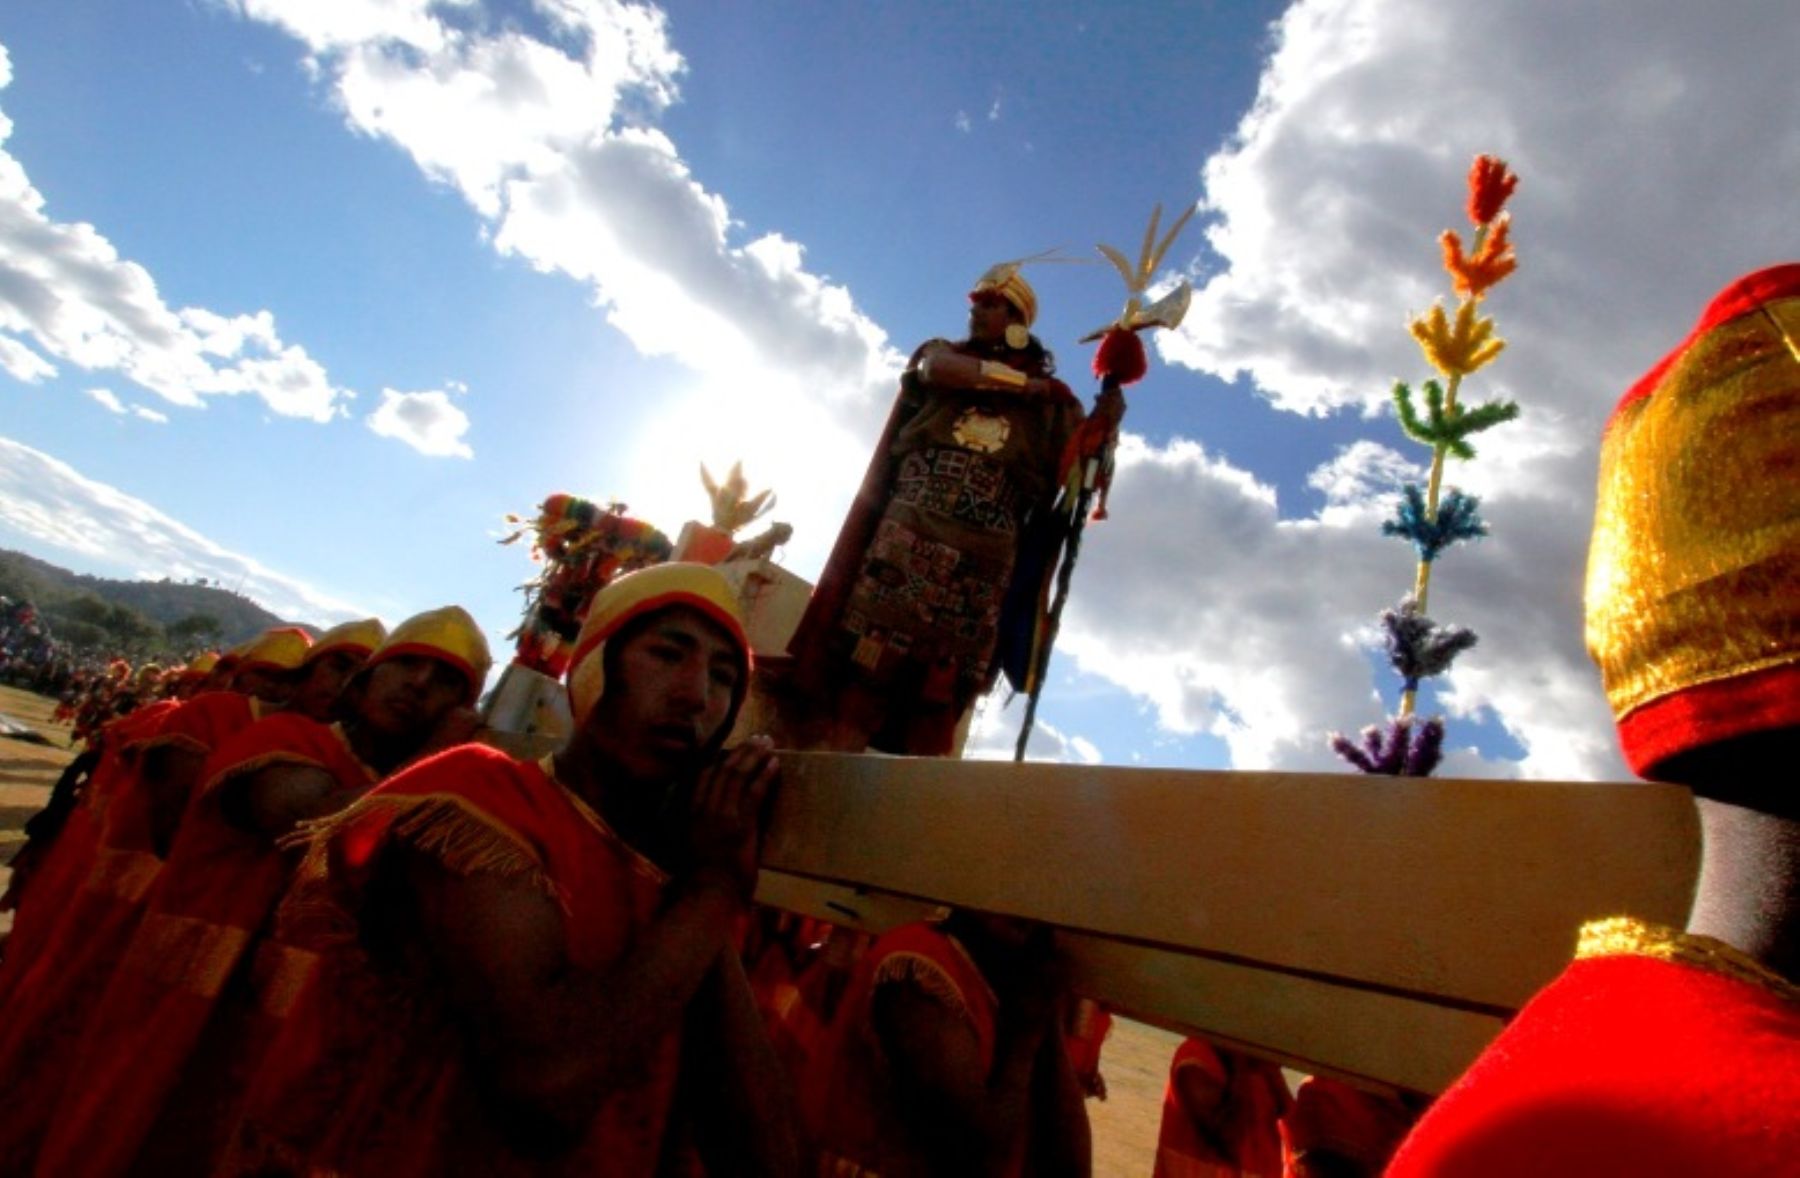 El tradicional Inti Raymi se celebró esta tarde en la explanada del Sacsayhuamán en Cusco.